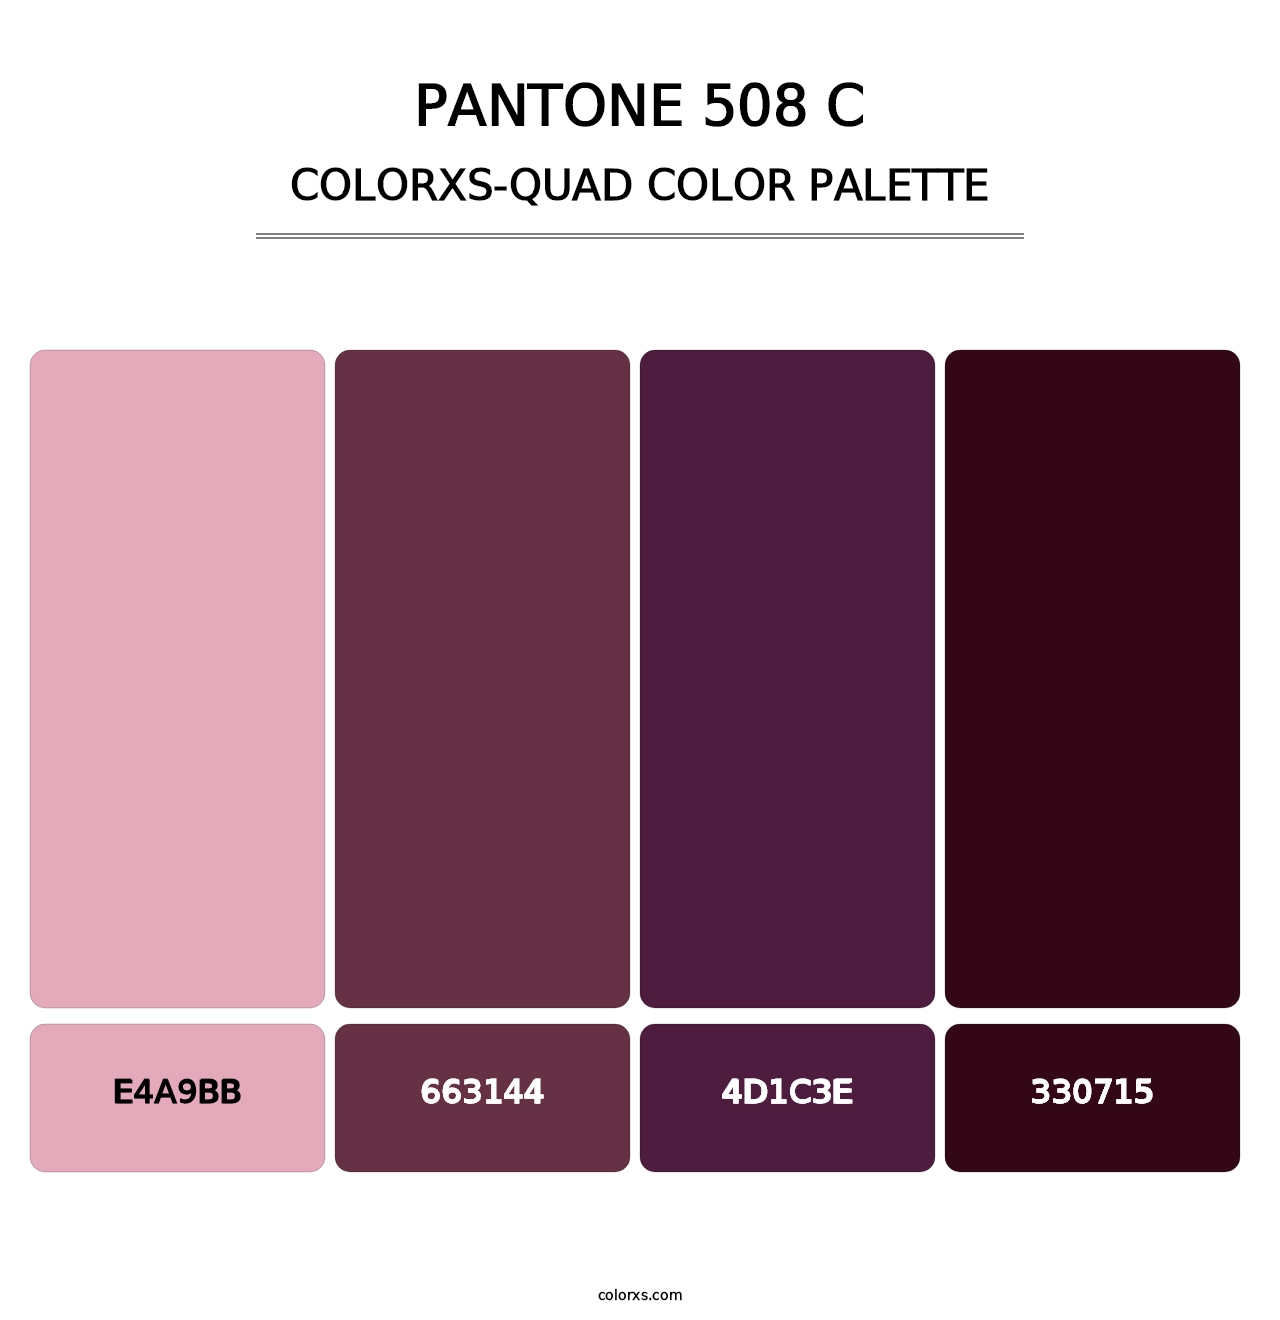 PANTONE 508 C - Colorxs Quad Palette